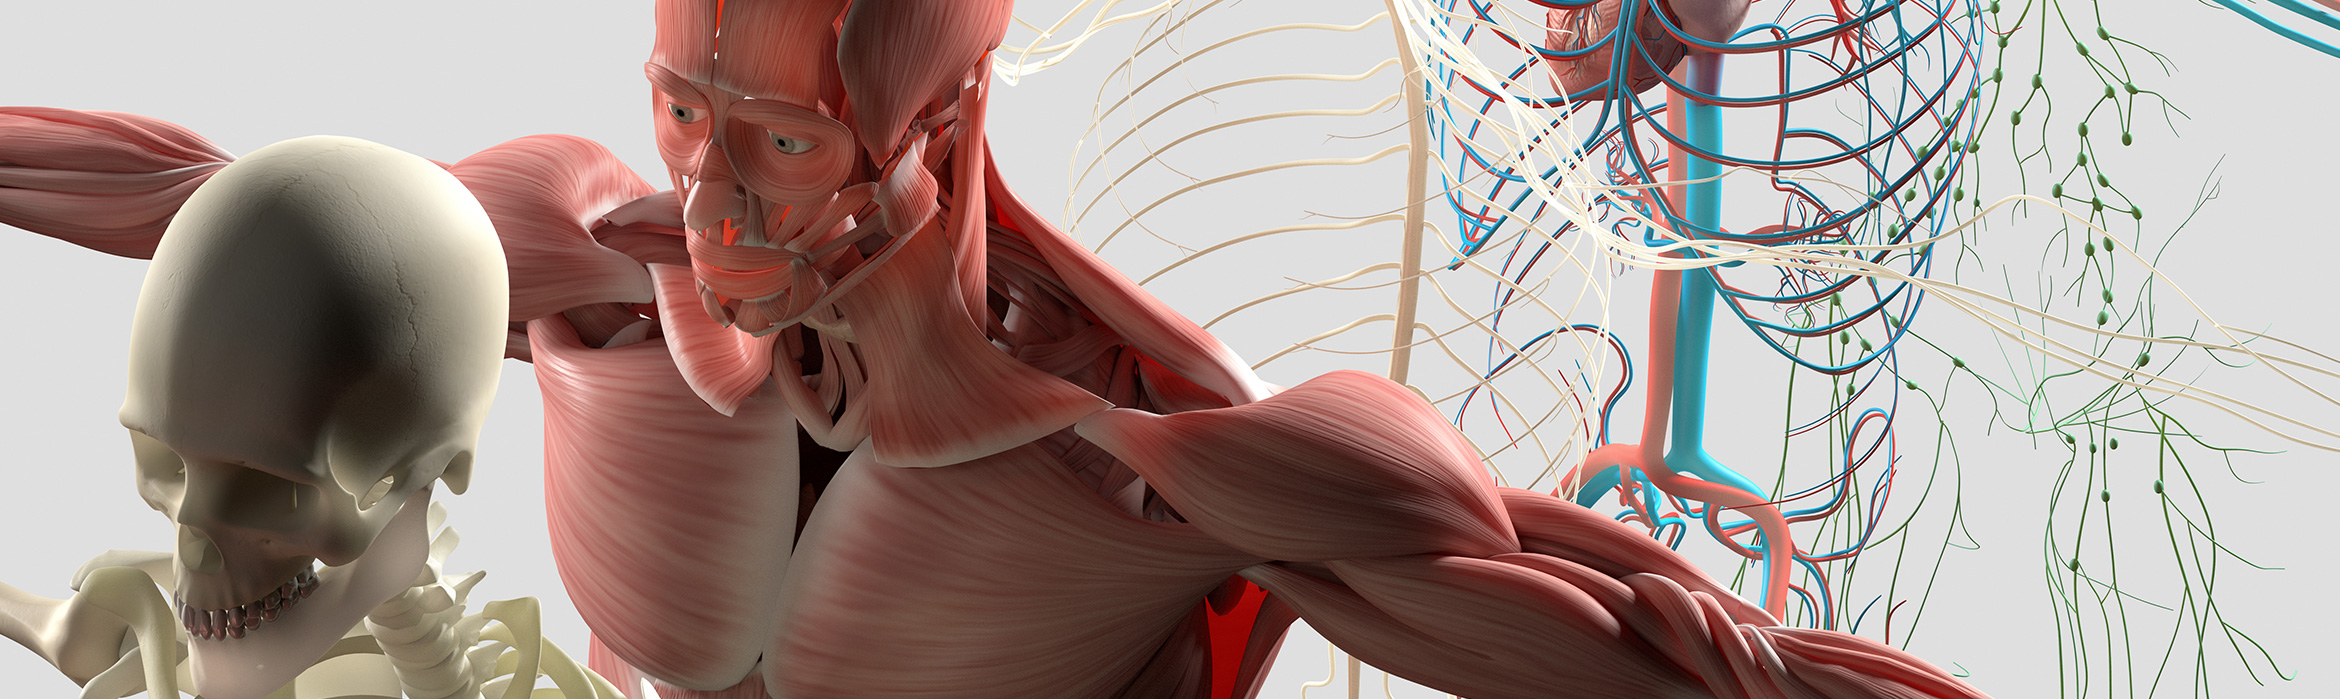 Vista de la anatomía humana en partes separadas, músculos, órganos, huesos, venas, arterias y nervios